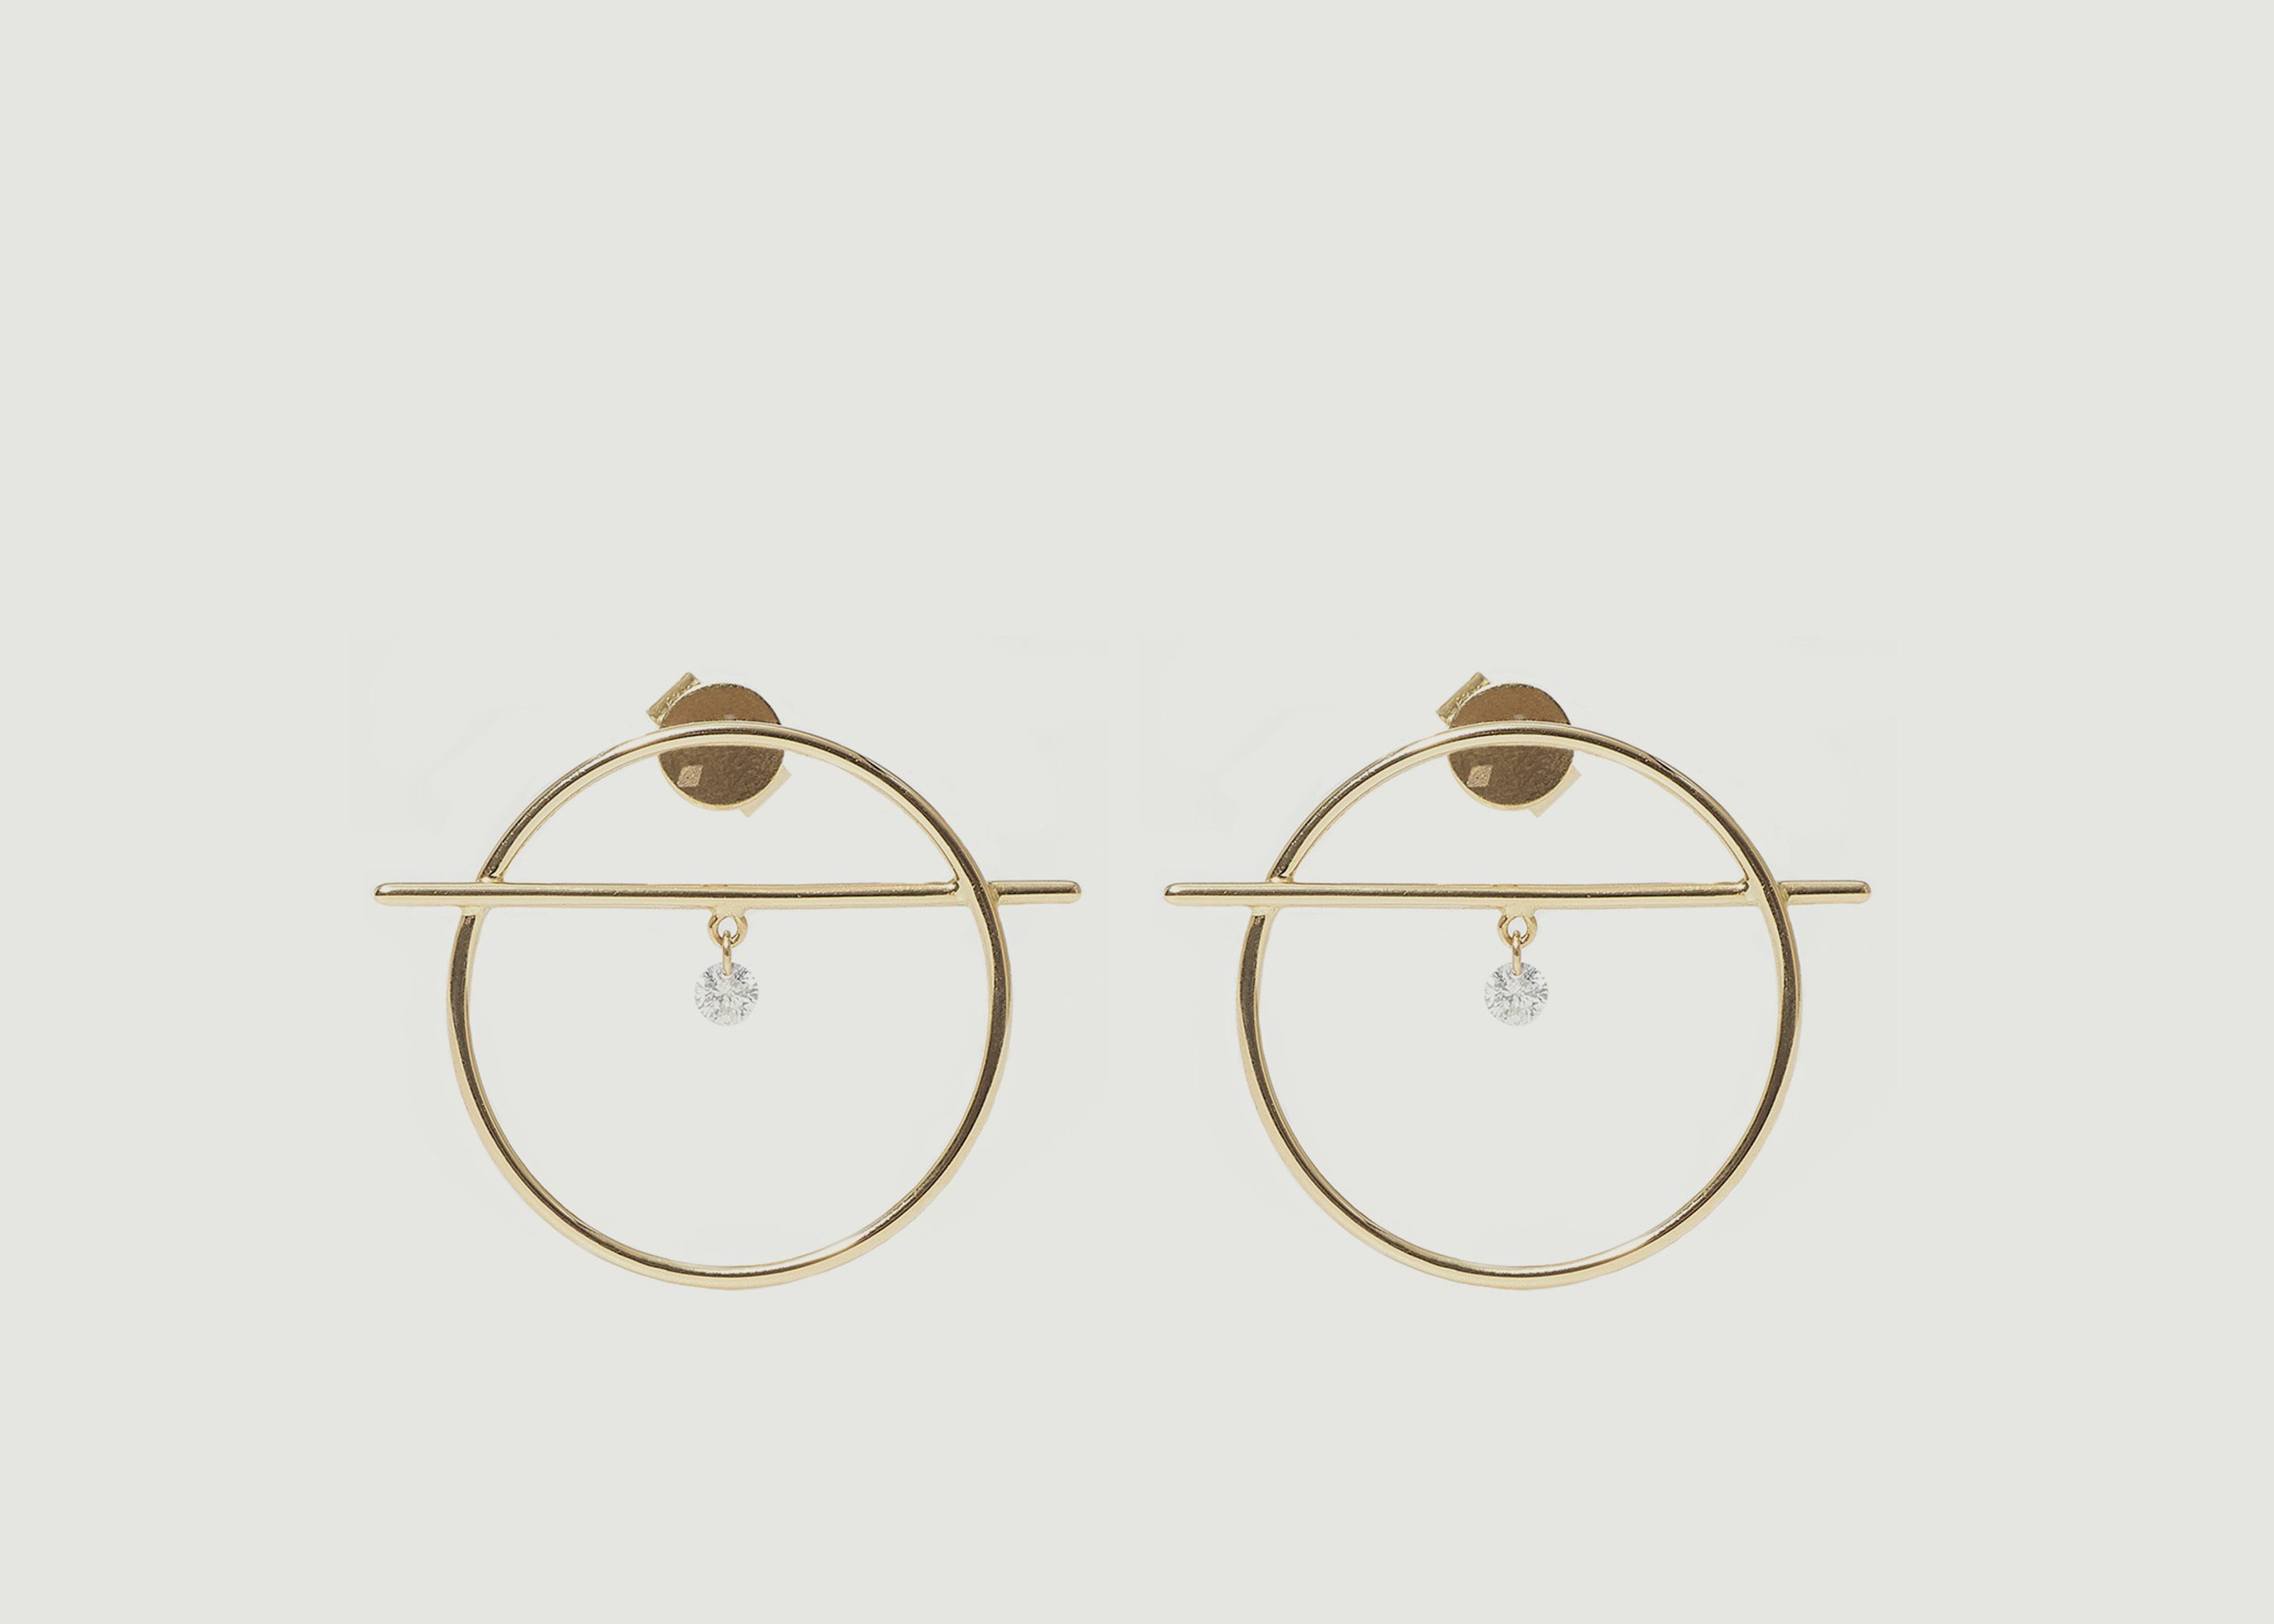 Boucles d'oreilles pendantes or et diamant Fibule XS - Persée Paris